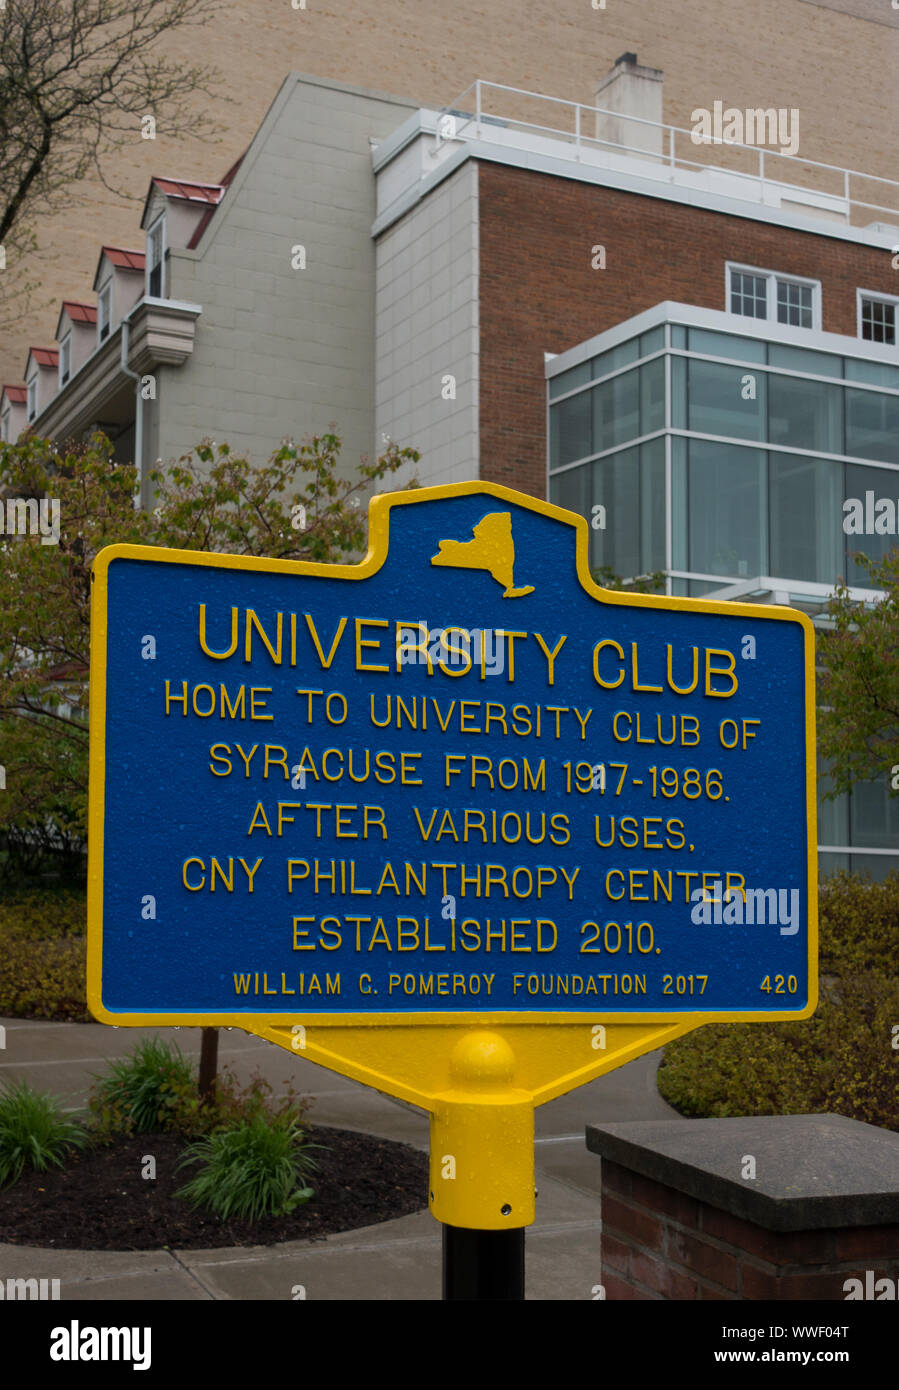 University club sign in Syracuse NY Stock Photo